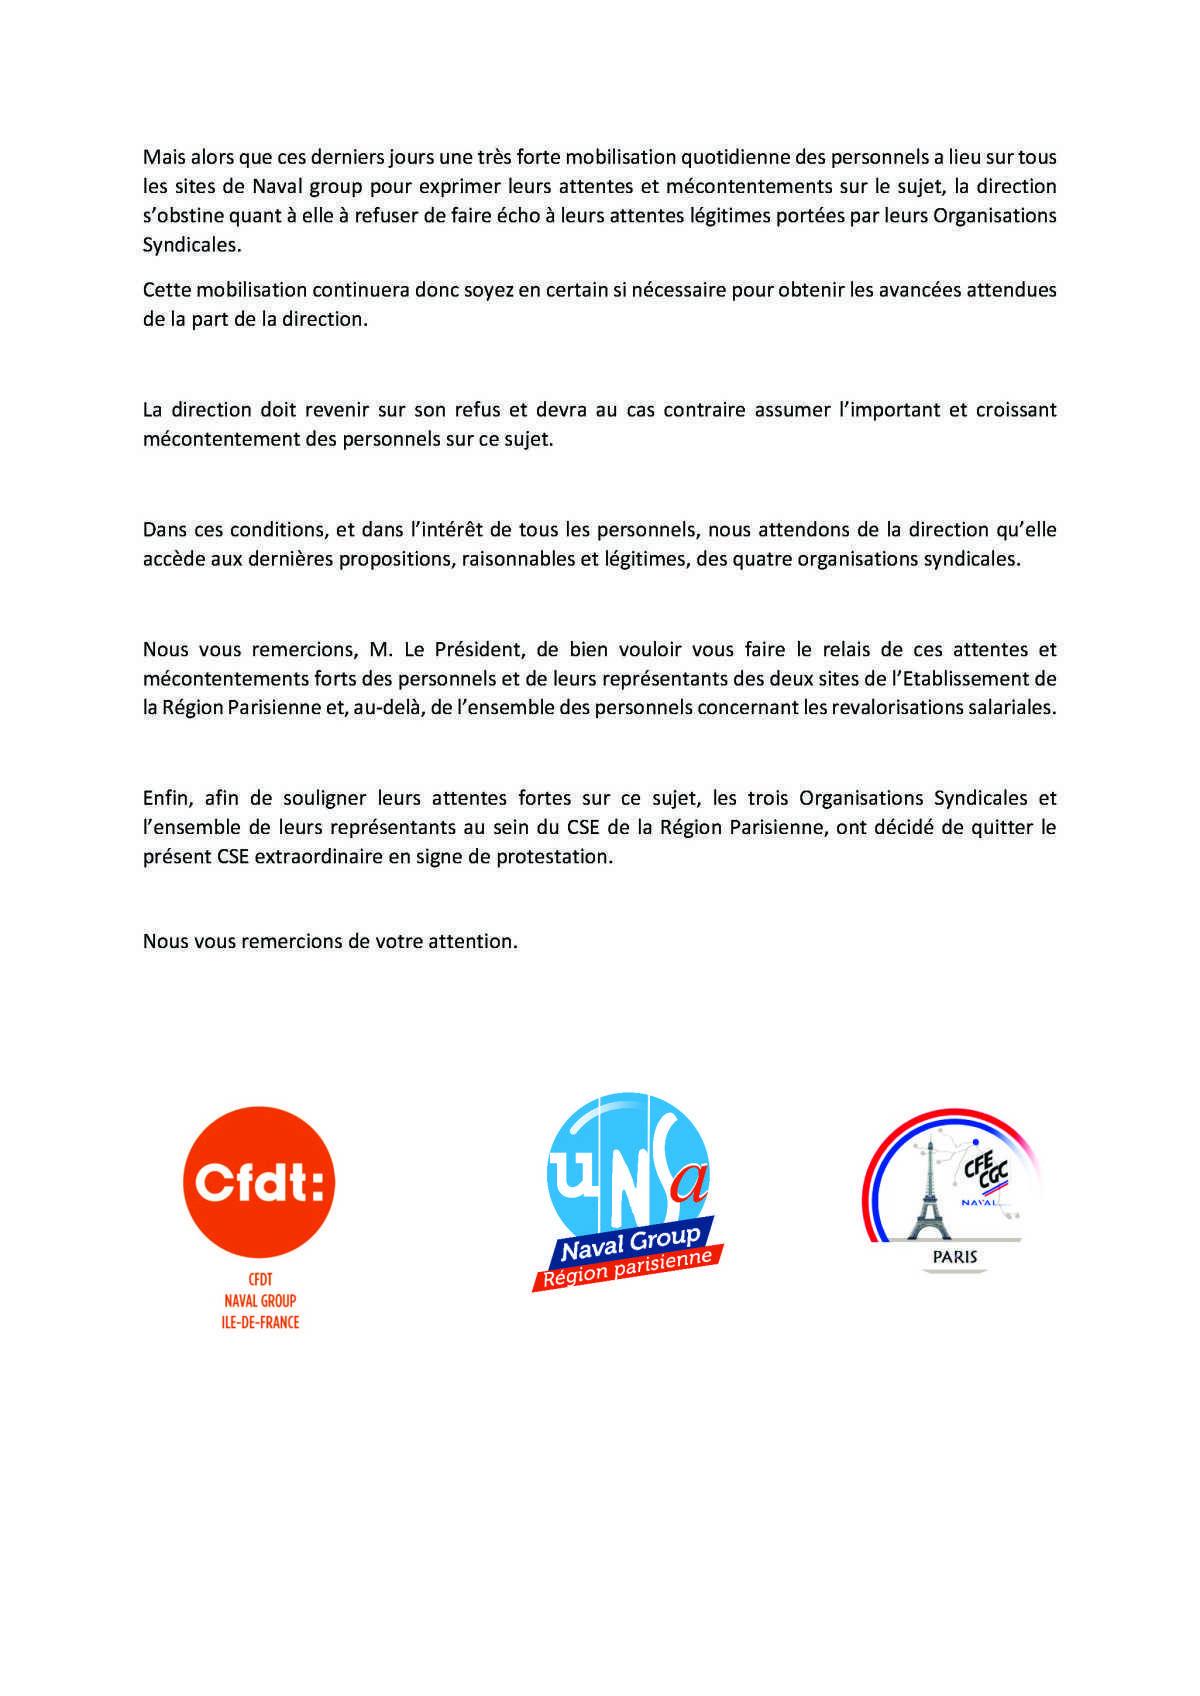 CSE extra Région Parisienne - Réunion du 15 décembre - Déclaration Liminaire